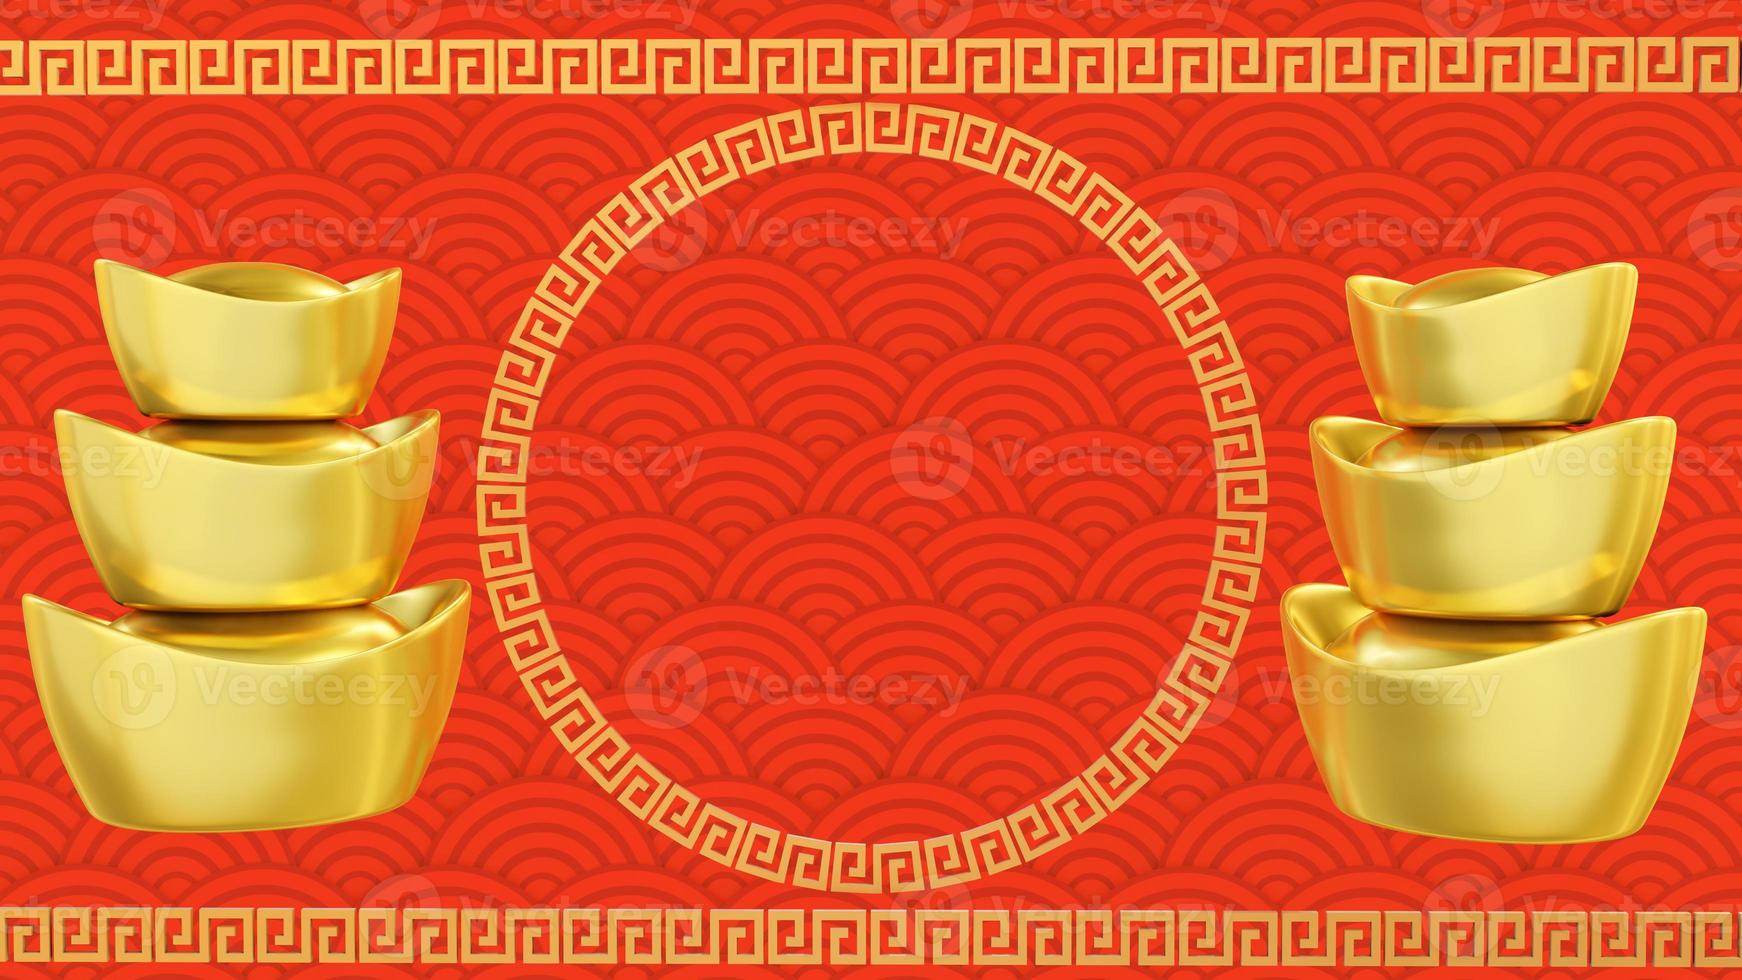 cartão de felicitações de ano novo chinês. ano do rato. ornamento dourado e vermelho. projeto de estilo 3D. conceito de modelo de banner de férias, elemento de decoração foto